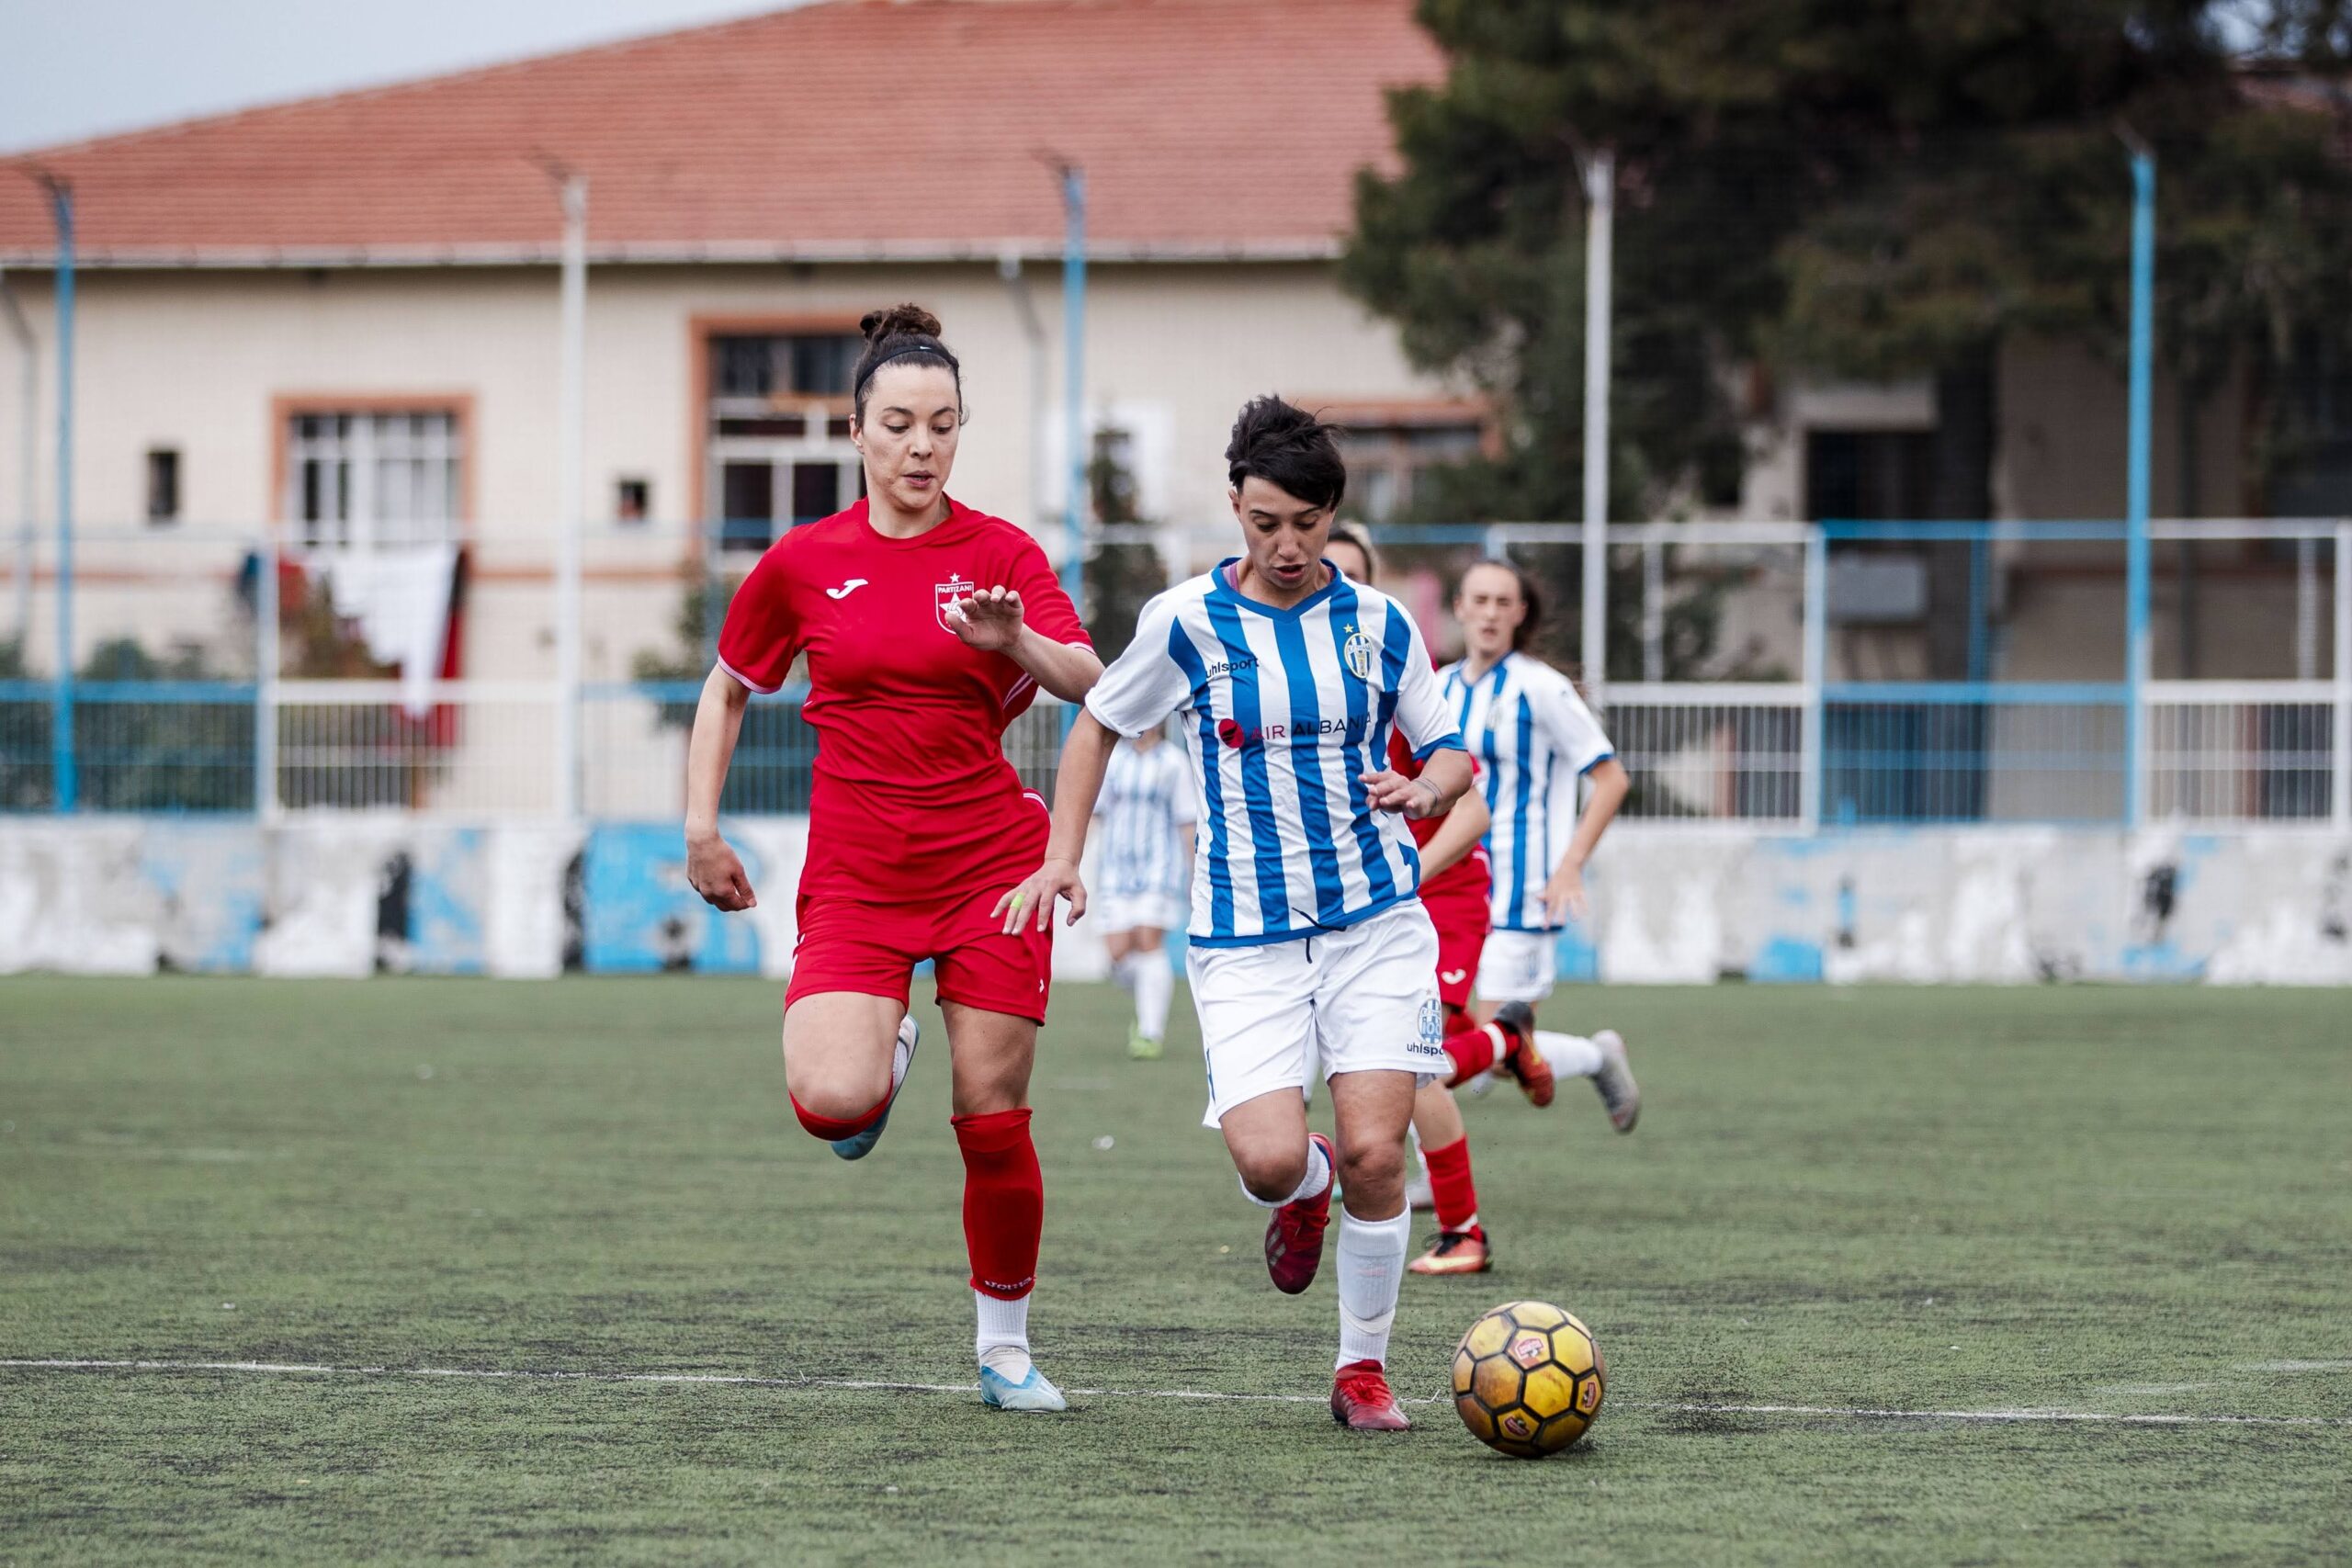 kupa e shqiperise per vajza gjysmefinalet luhen ne fundjave apolonia pret gramshin spikat derbi partizani tirana